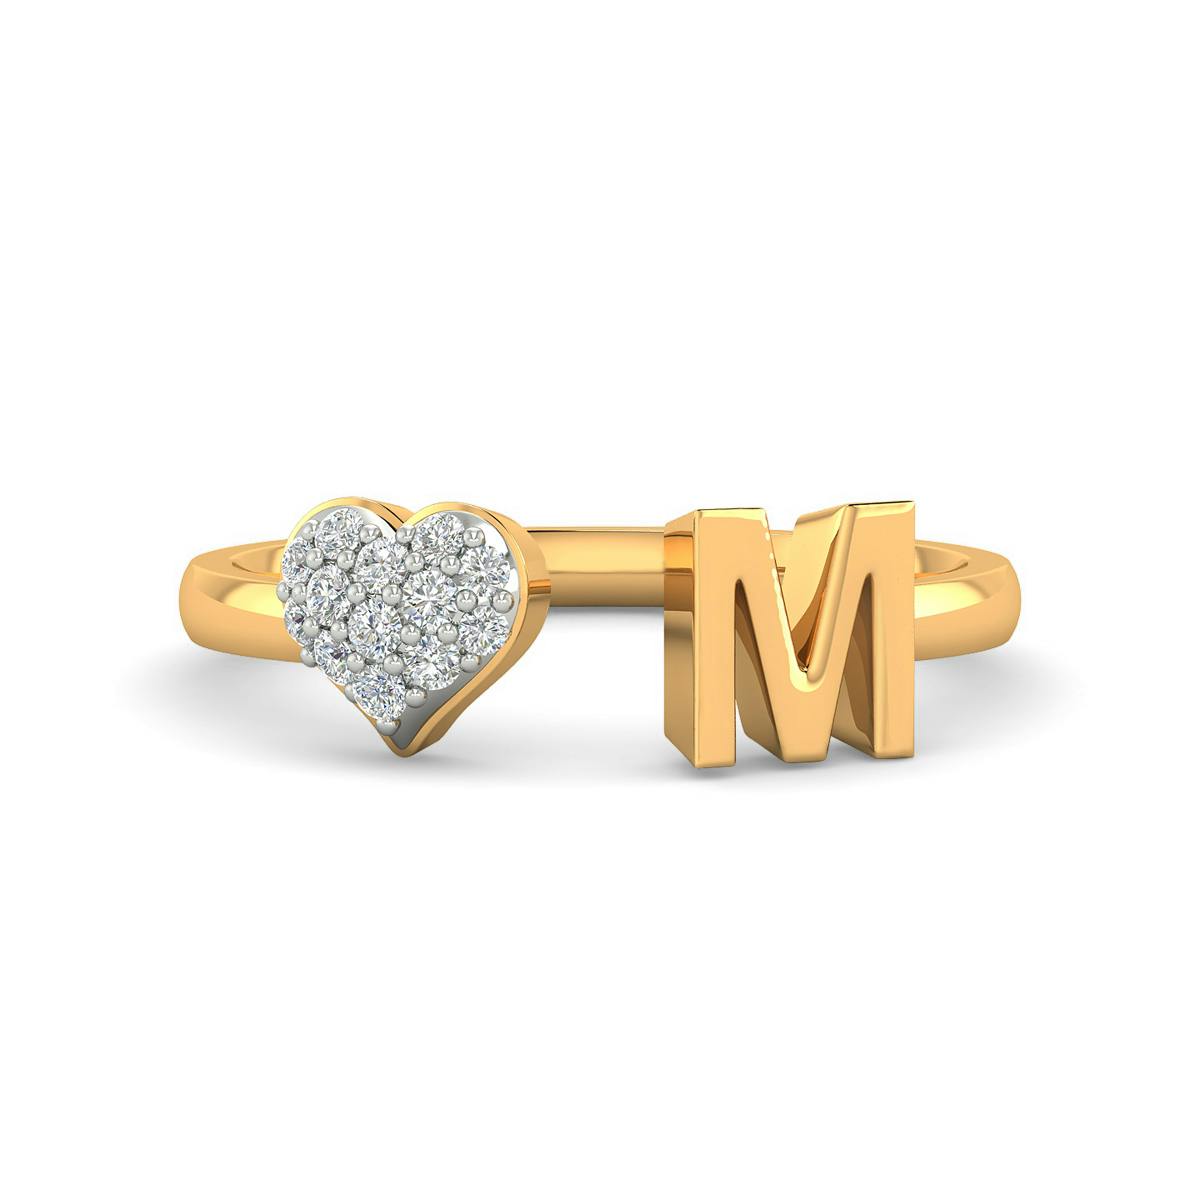 Mahati diamond ring